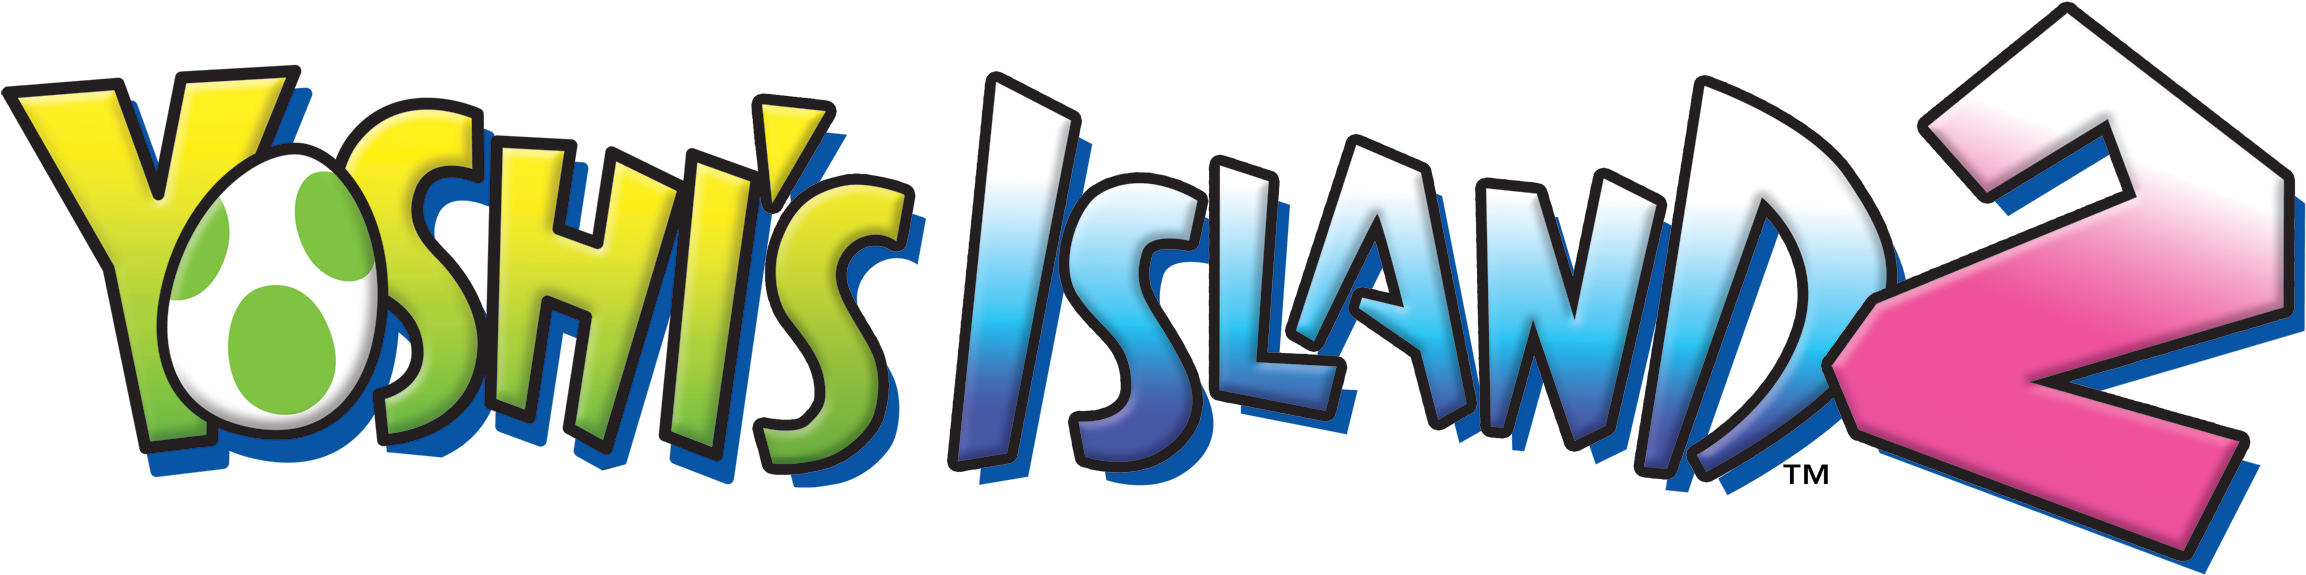 Yoshi's Island Ds Logo - Yoshi Island Ds Logo Clipart (2400x706), Png Download